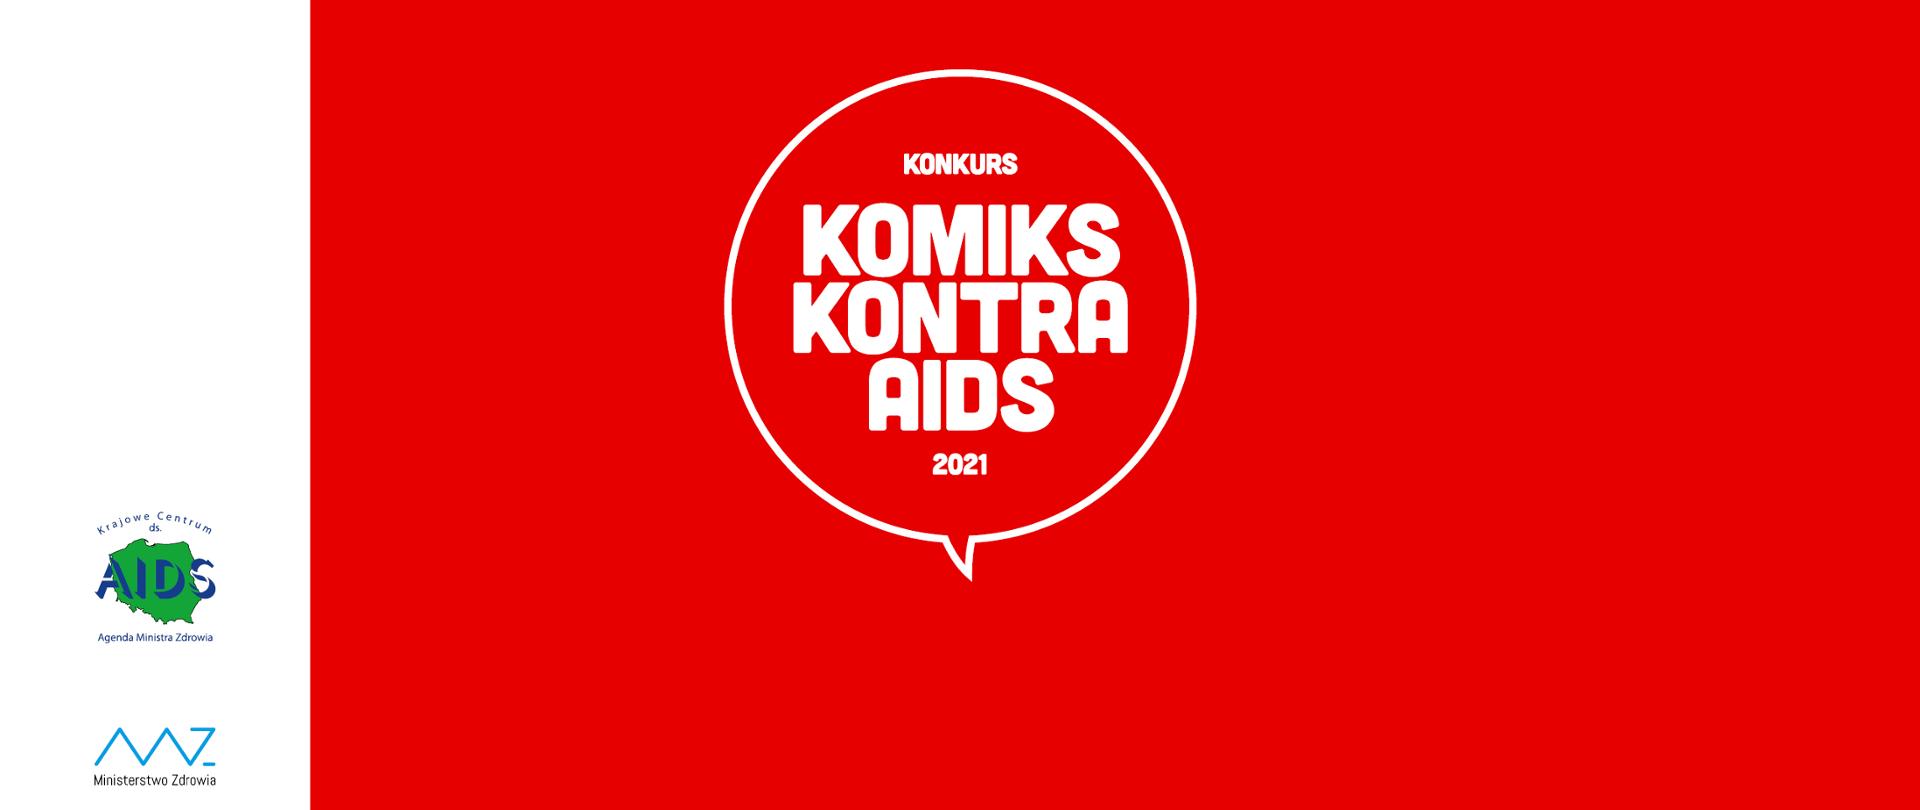 Obraz przedstawia logo konkursu Komiks kontra AIDS